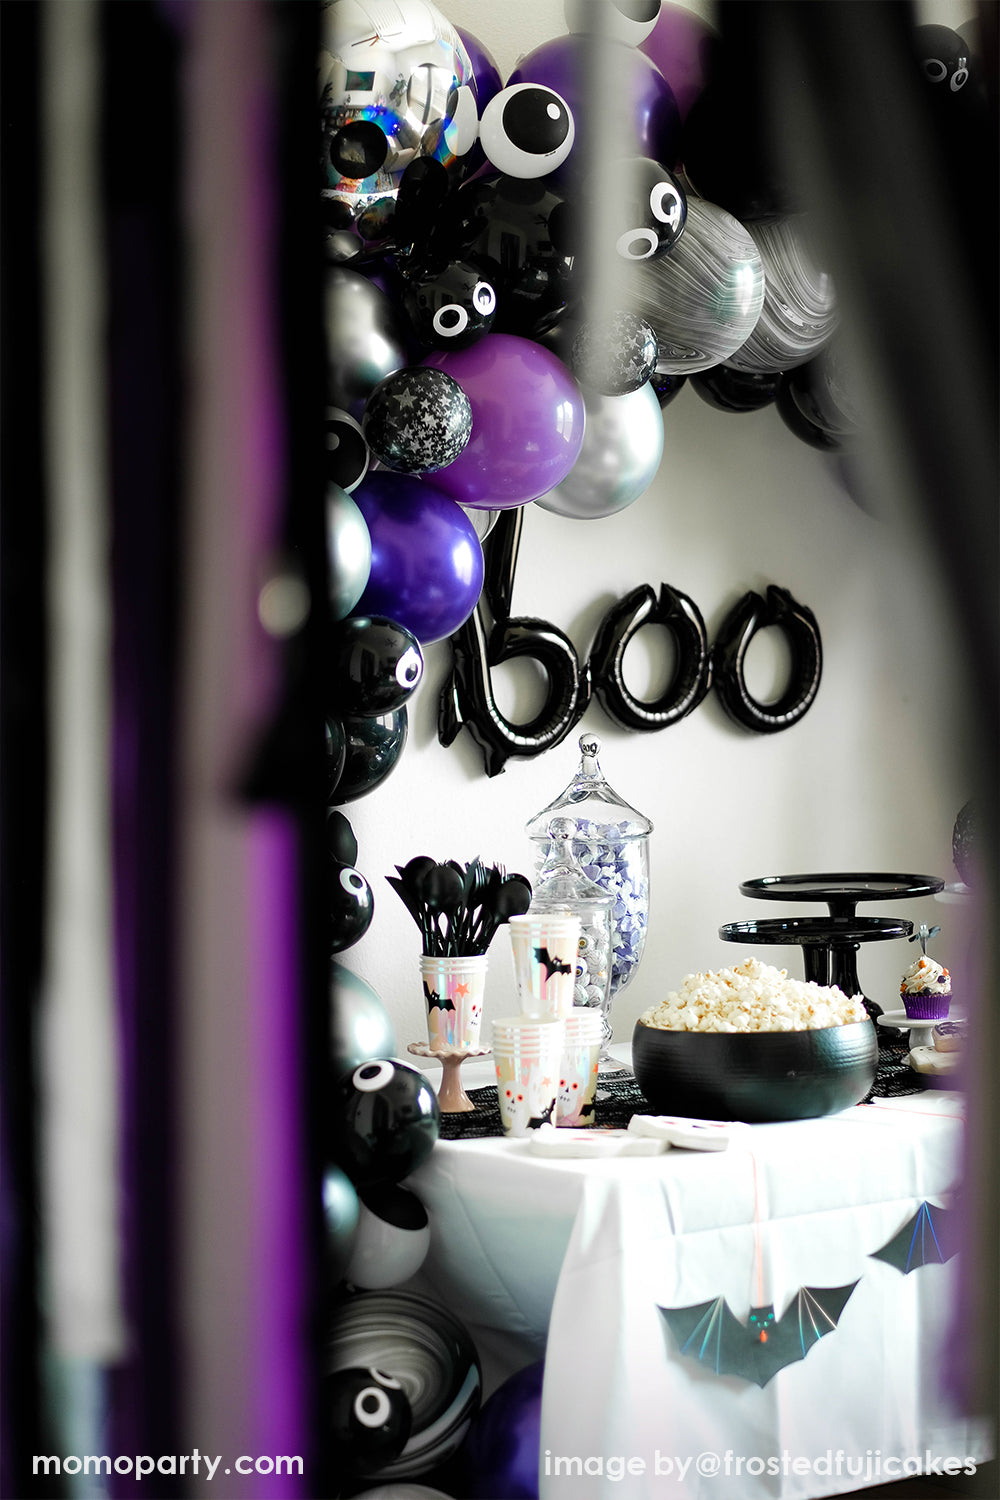 “Boo” Script Foil Mylar Balloon